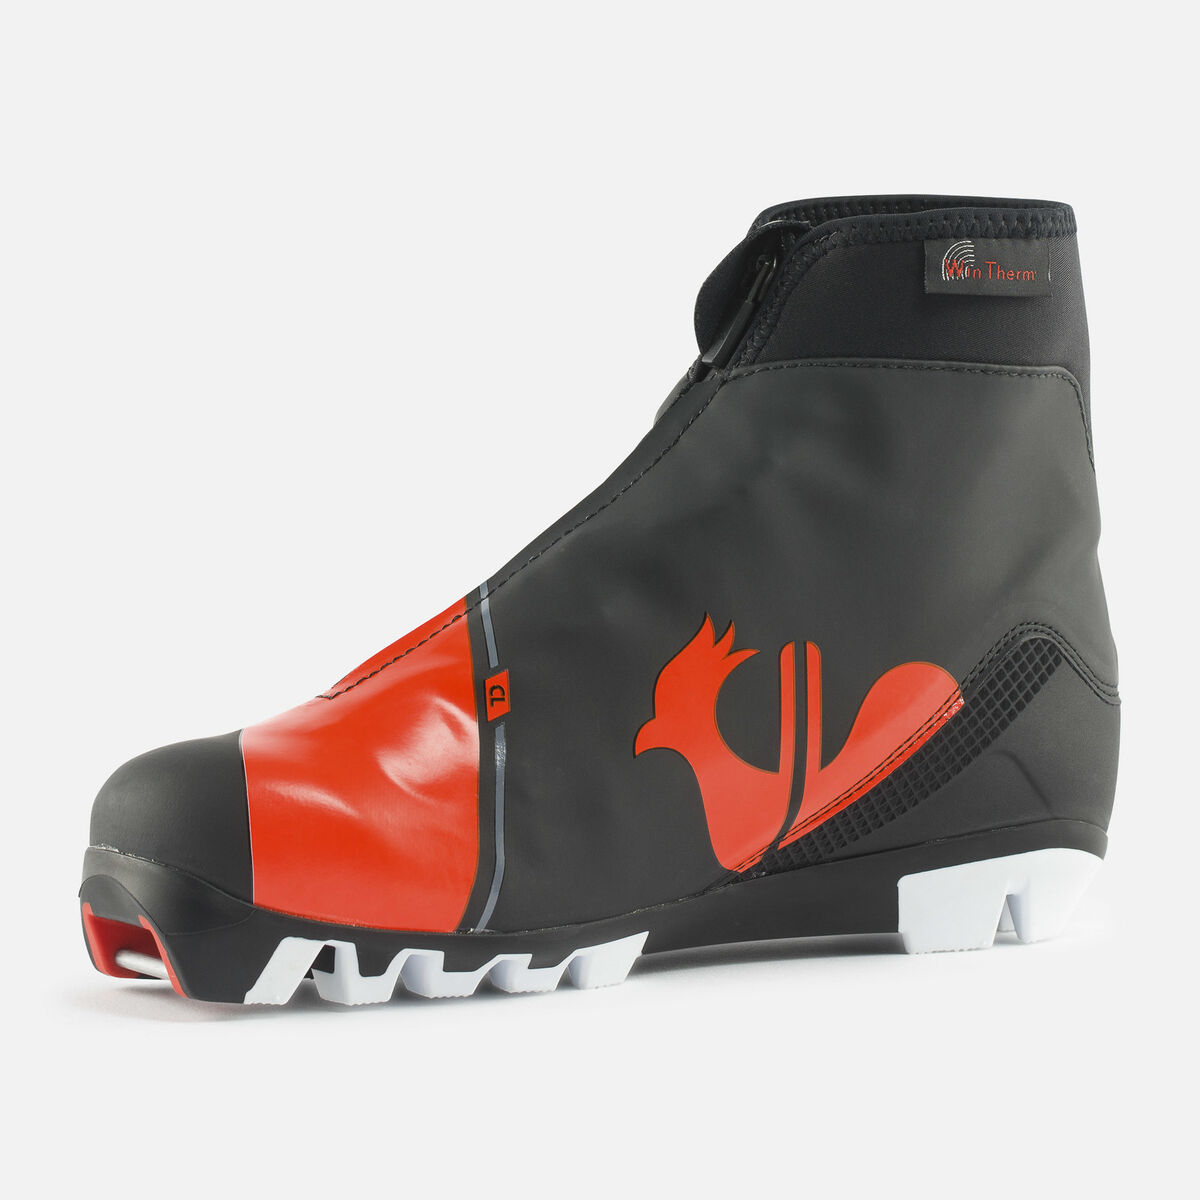 Rossignol Junior Nordic Boots X-IUM J CLASSIC 